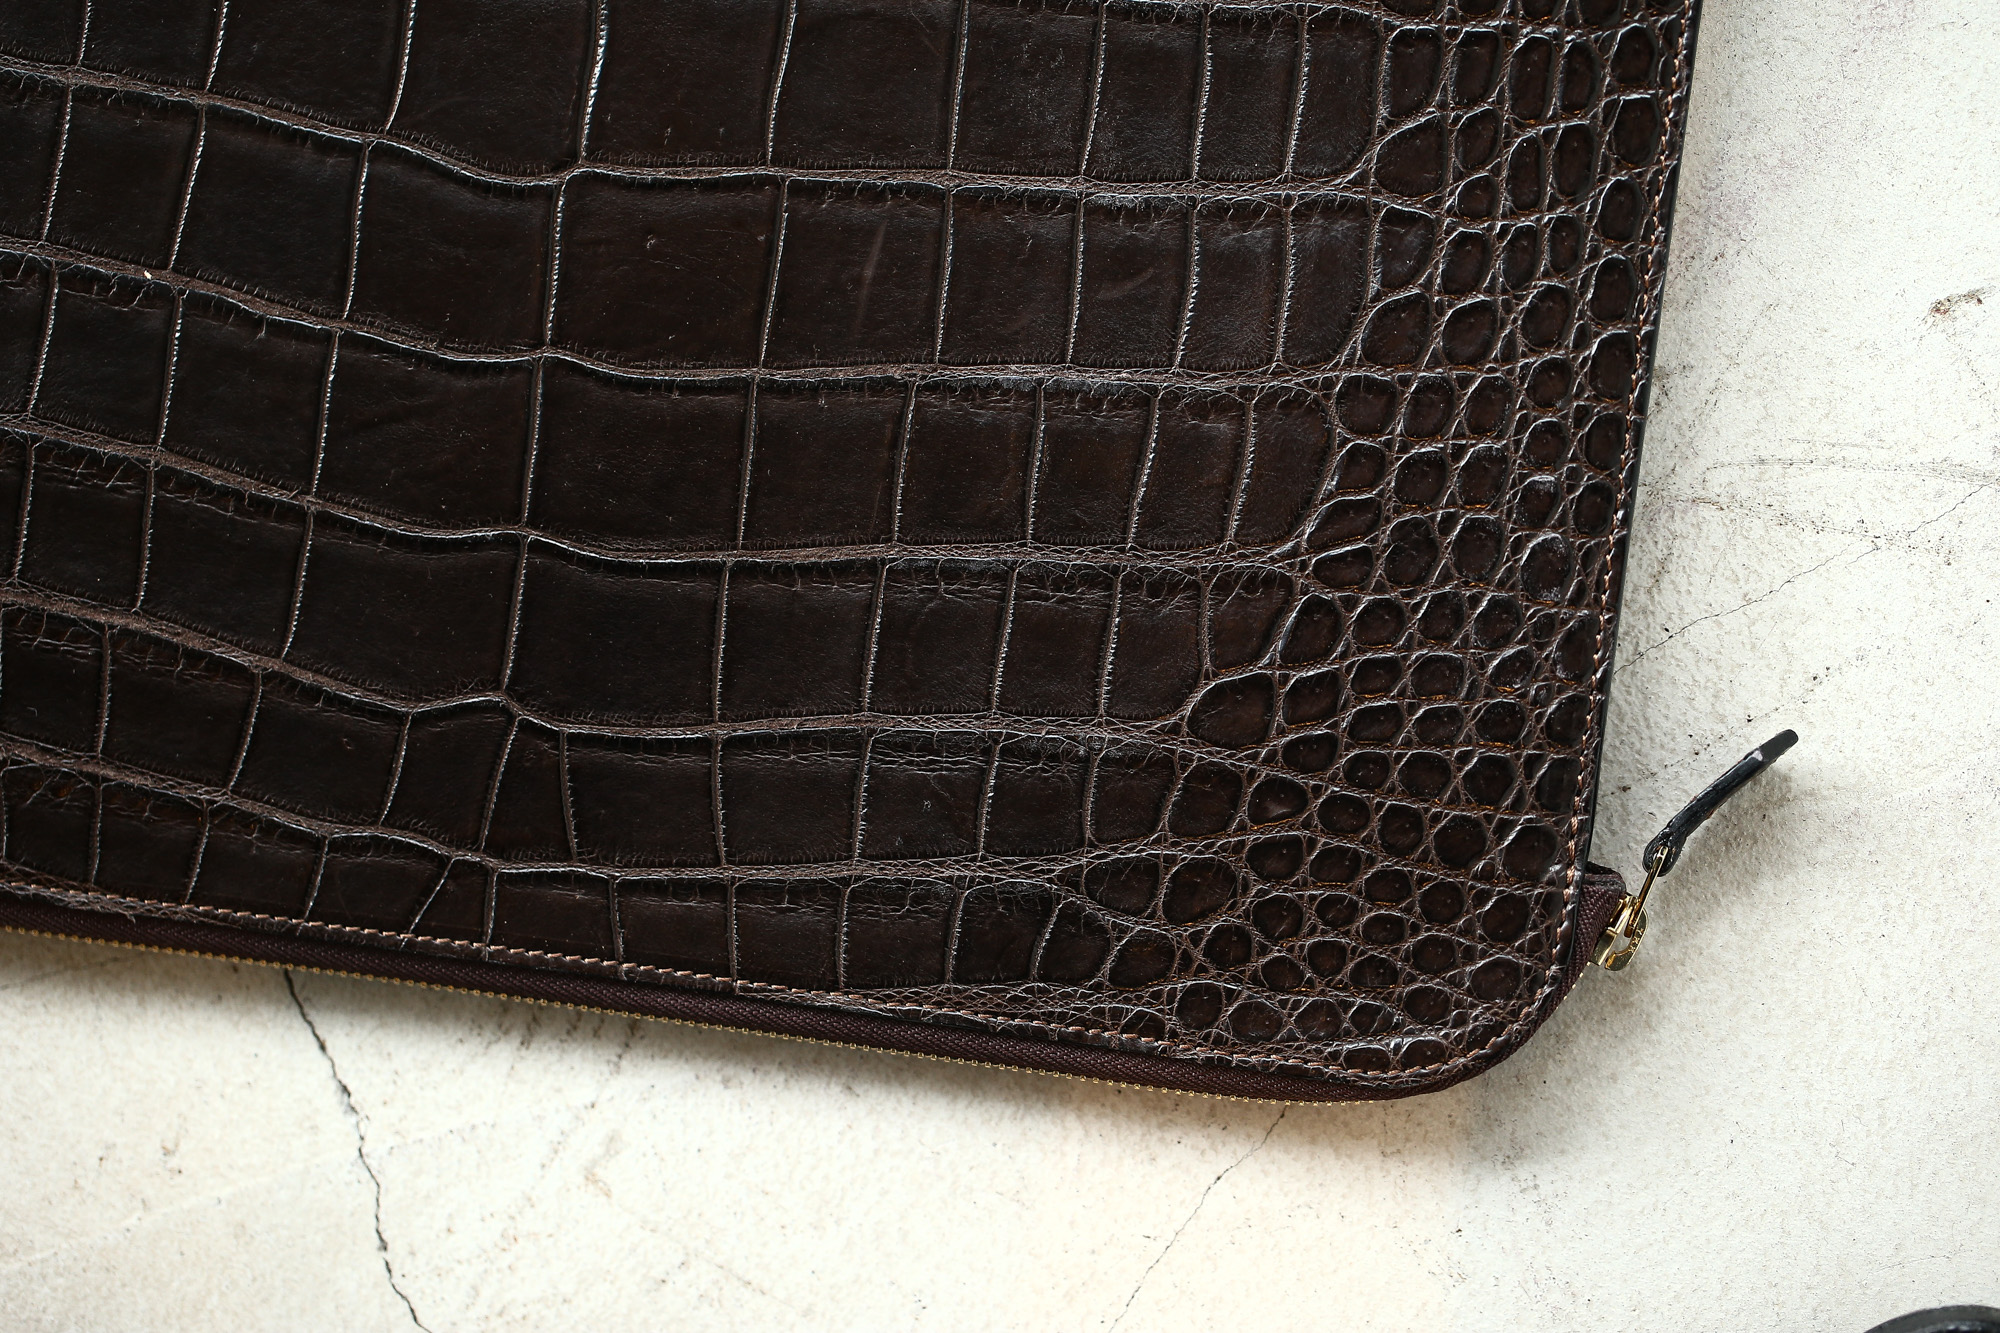 Cisei × 山本製鞄 (シセイ × 山本製鞄) Crocodile Document Case Large (クロコダイル ドキュメントケース ラージ) Nile Crocodile Leather (ワニ革) ナイル クロコダイル クラッチバッグ BLACK(ブラック),NAVY(ネイビー),BROWN(ブラウン)  Made in Japan (日本製)  cisei yamamotoseiho トートバック クロコ 愛知 名古屋 Alto e Diritto アルト エ デリット